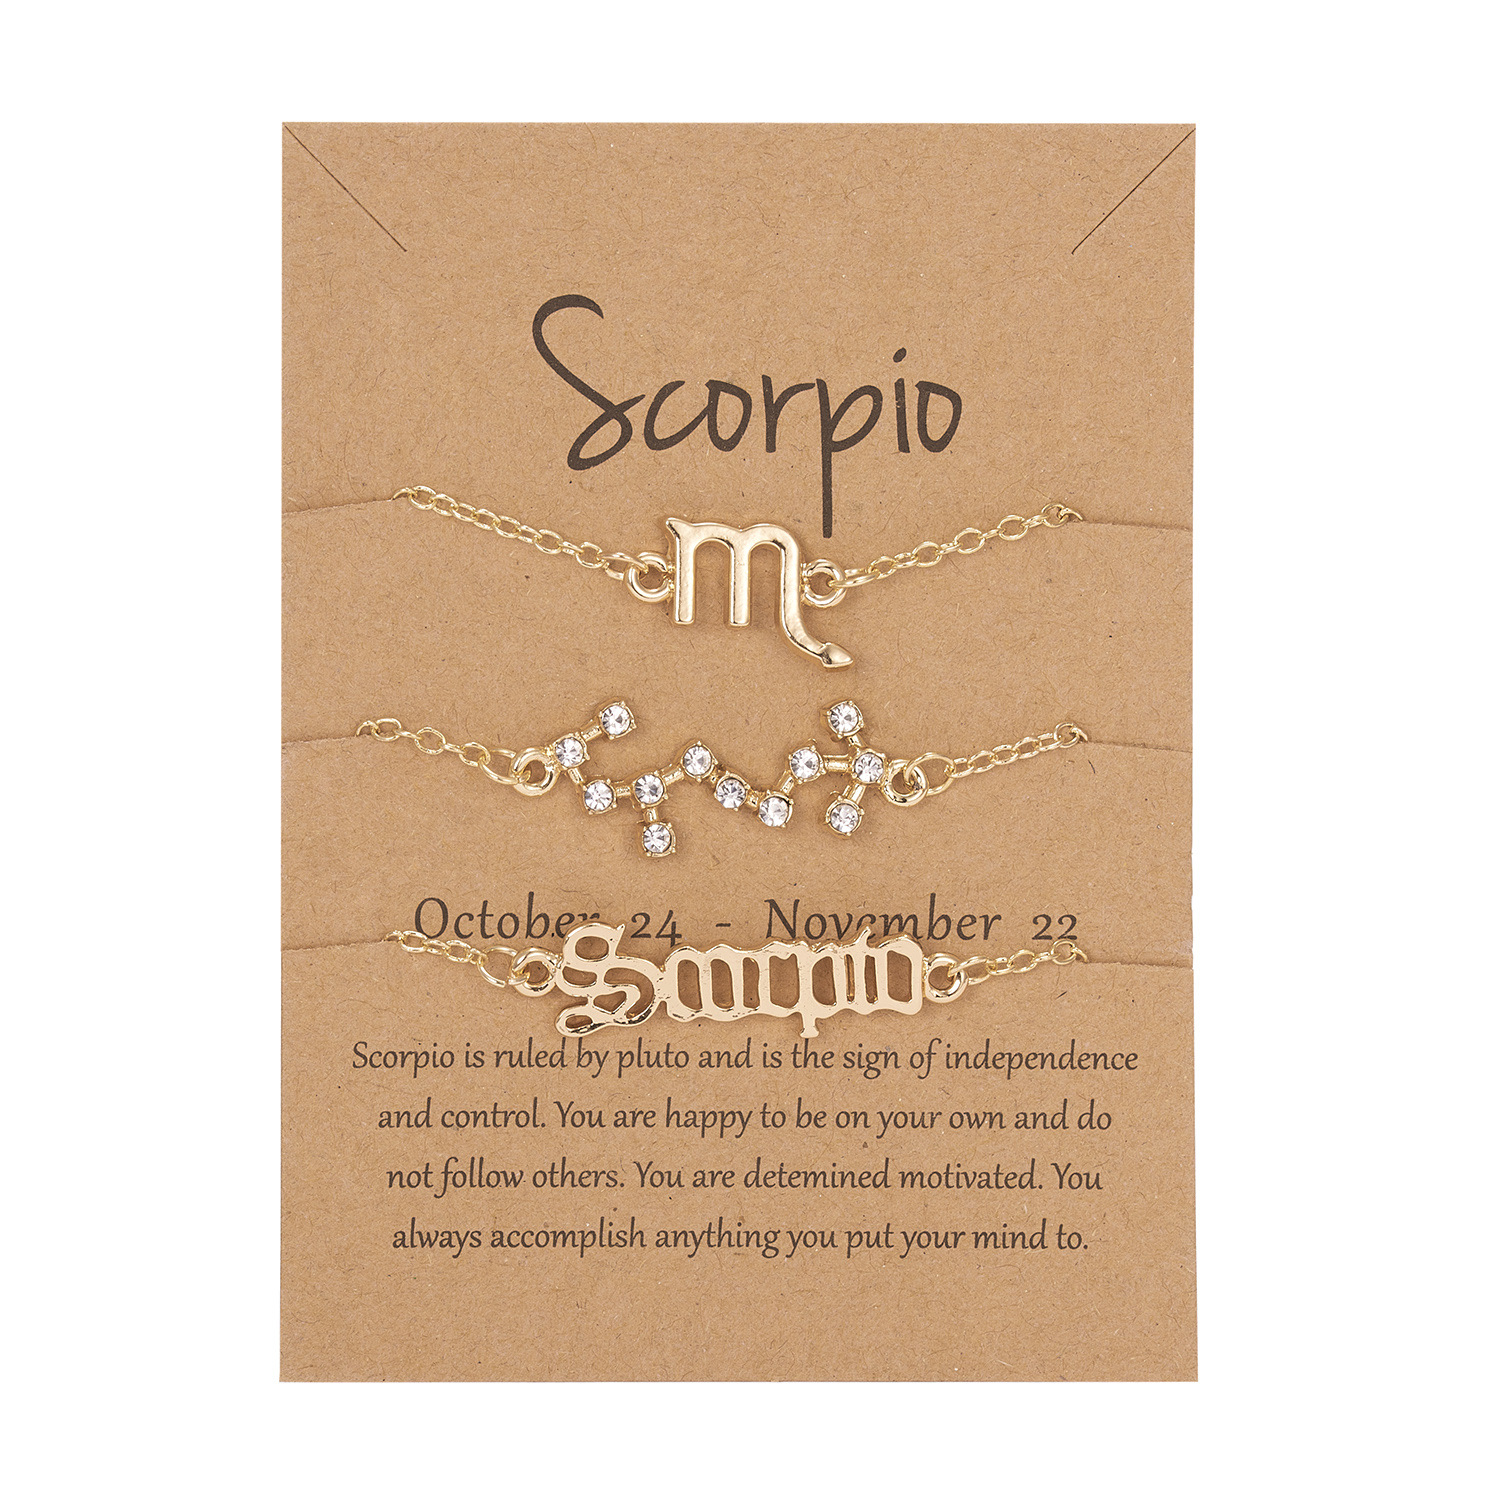 10 Scorpio